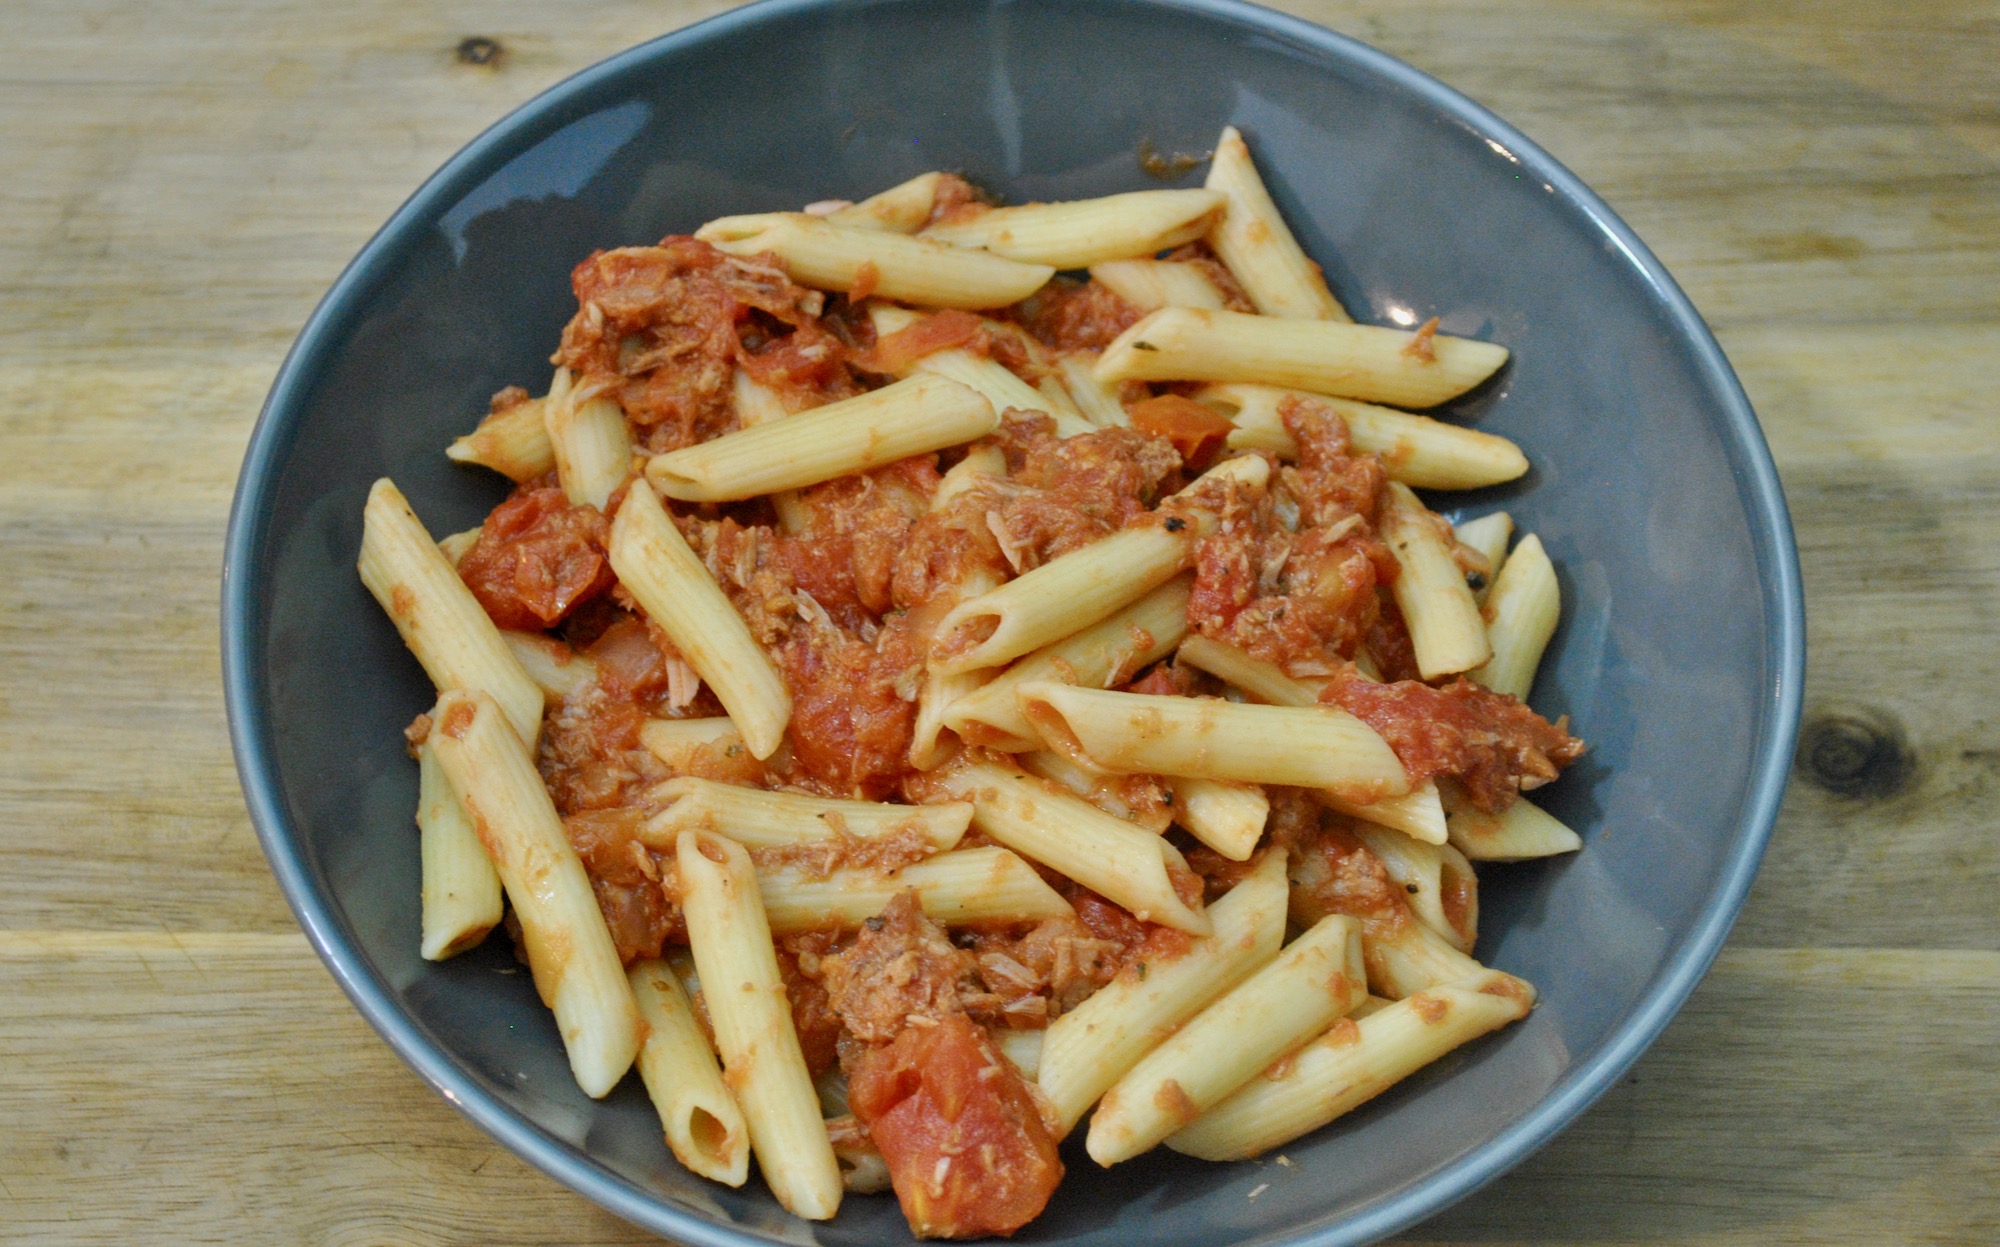 tomato tuna pasta recipe - 1